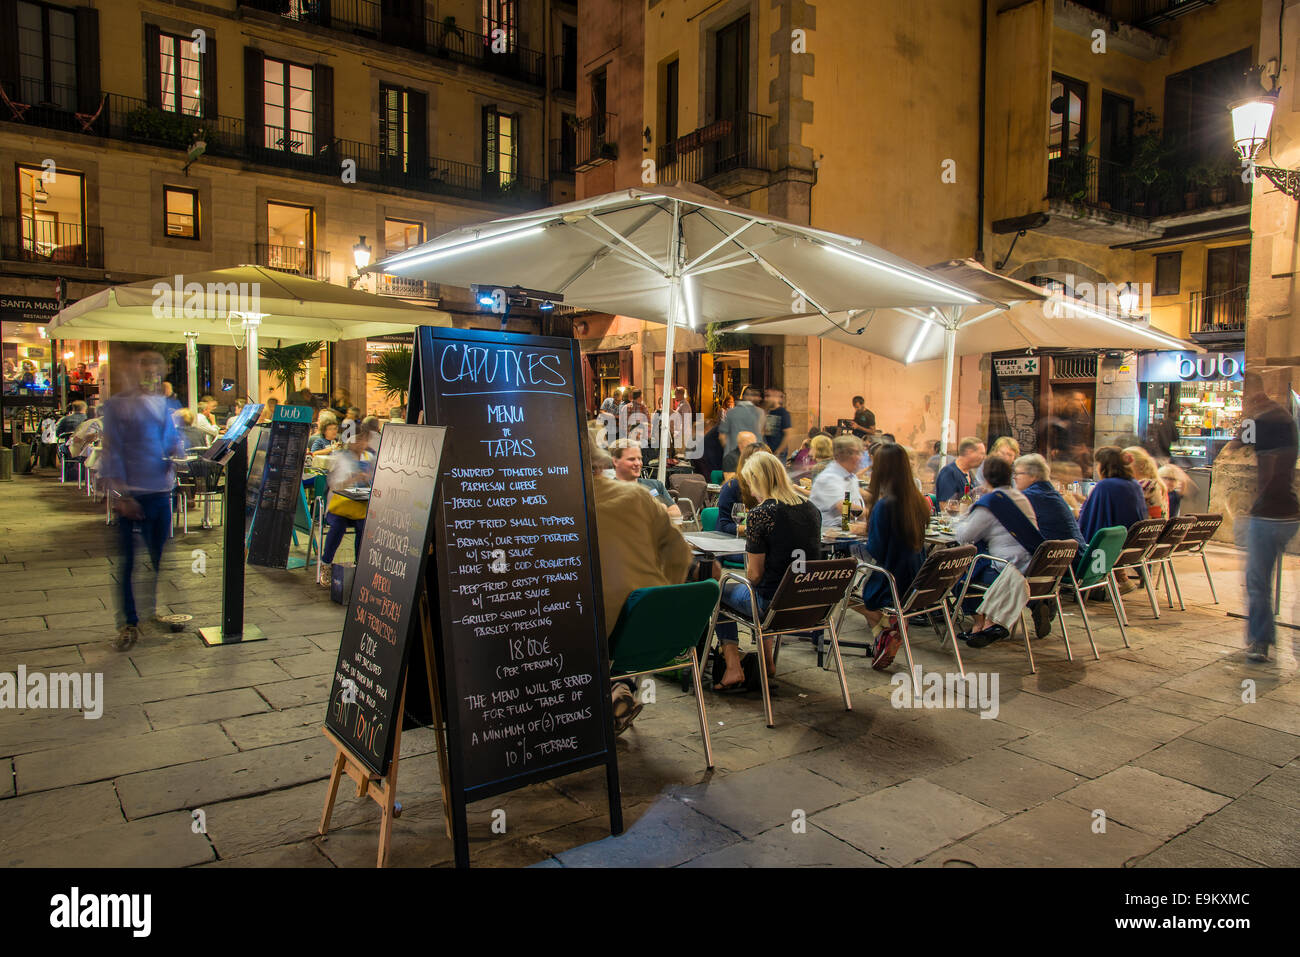 Nachtansicht der ein Café im Freien serviert Tapas Menü Tafel mit Menschen, die an den Tischen, Barcelona, Katalonien, Spanien Stockfoto